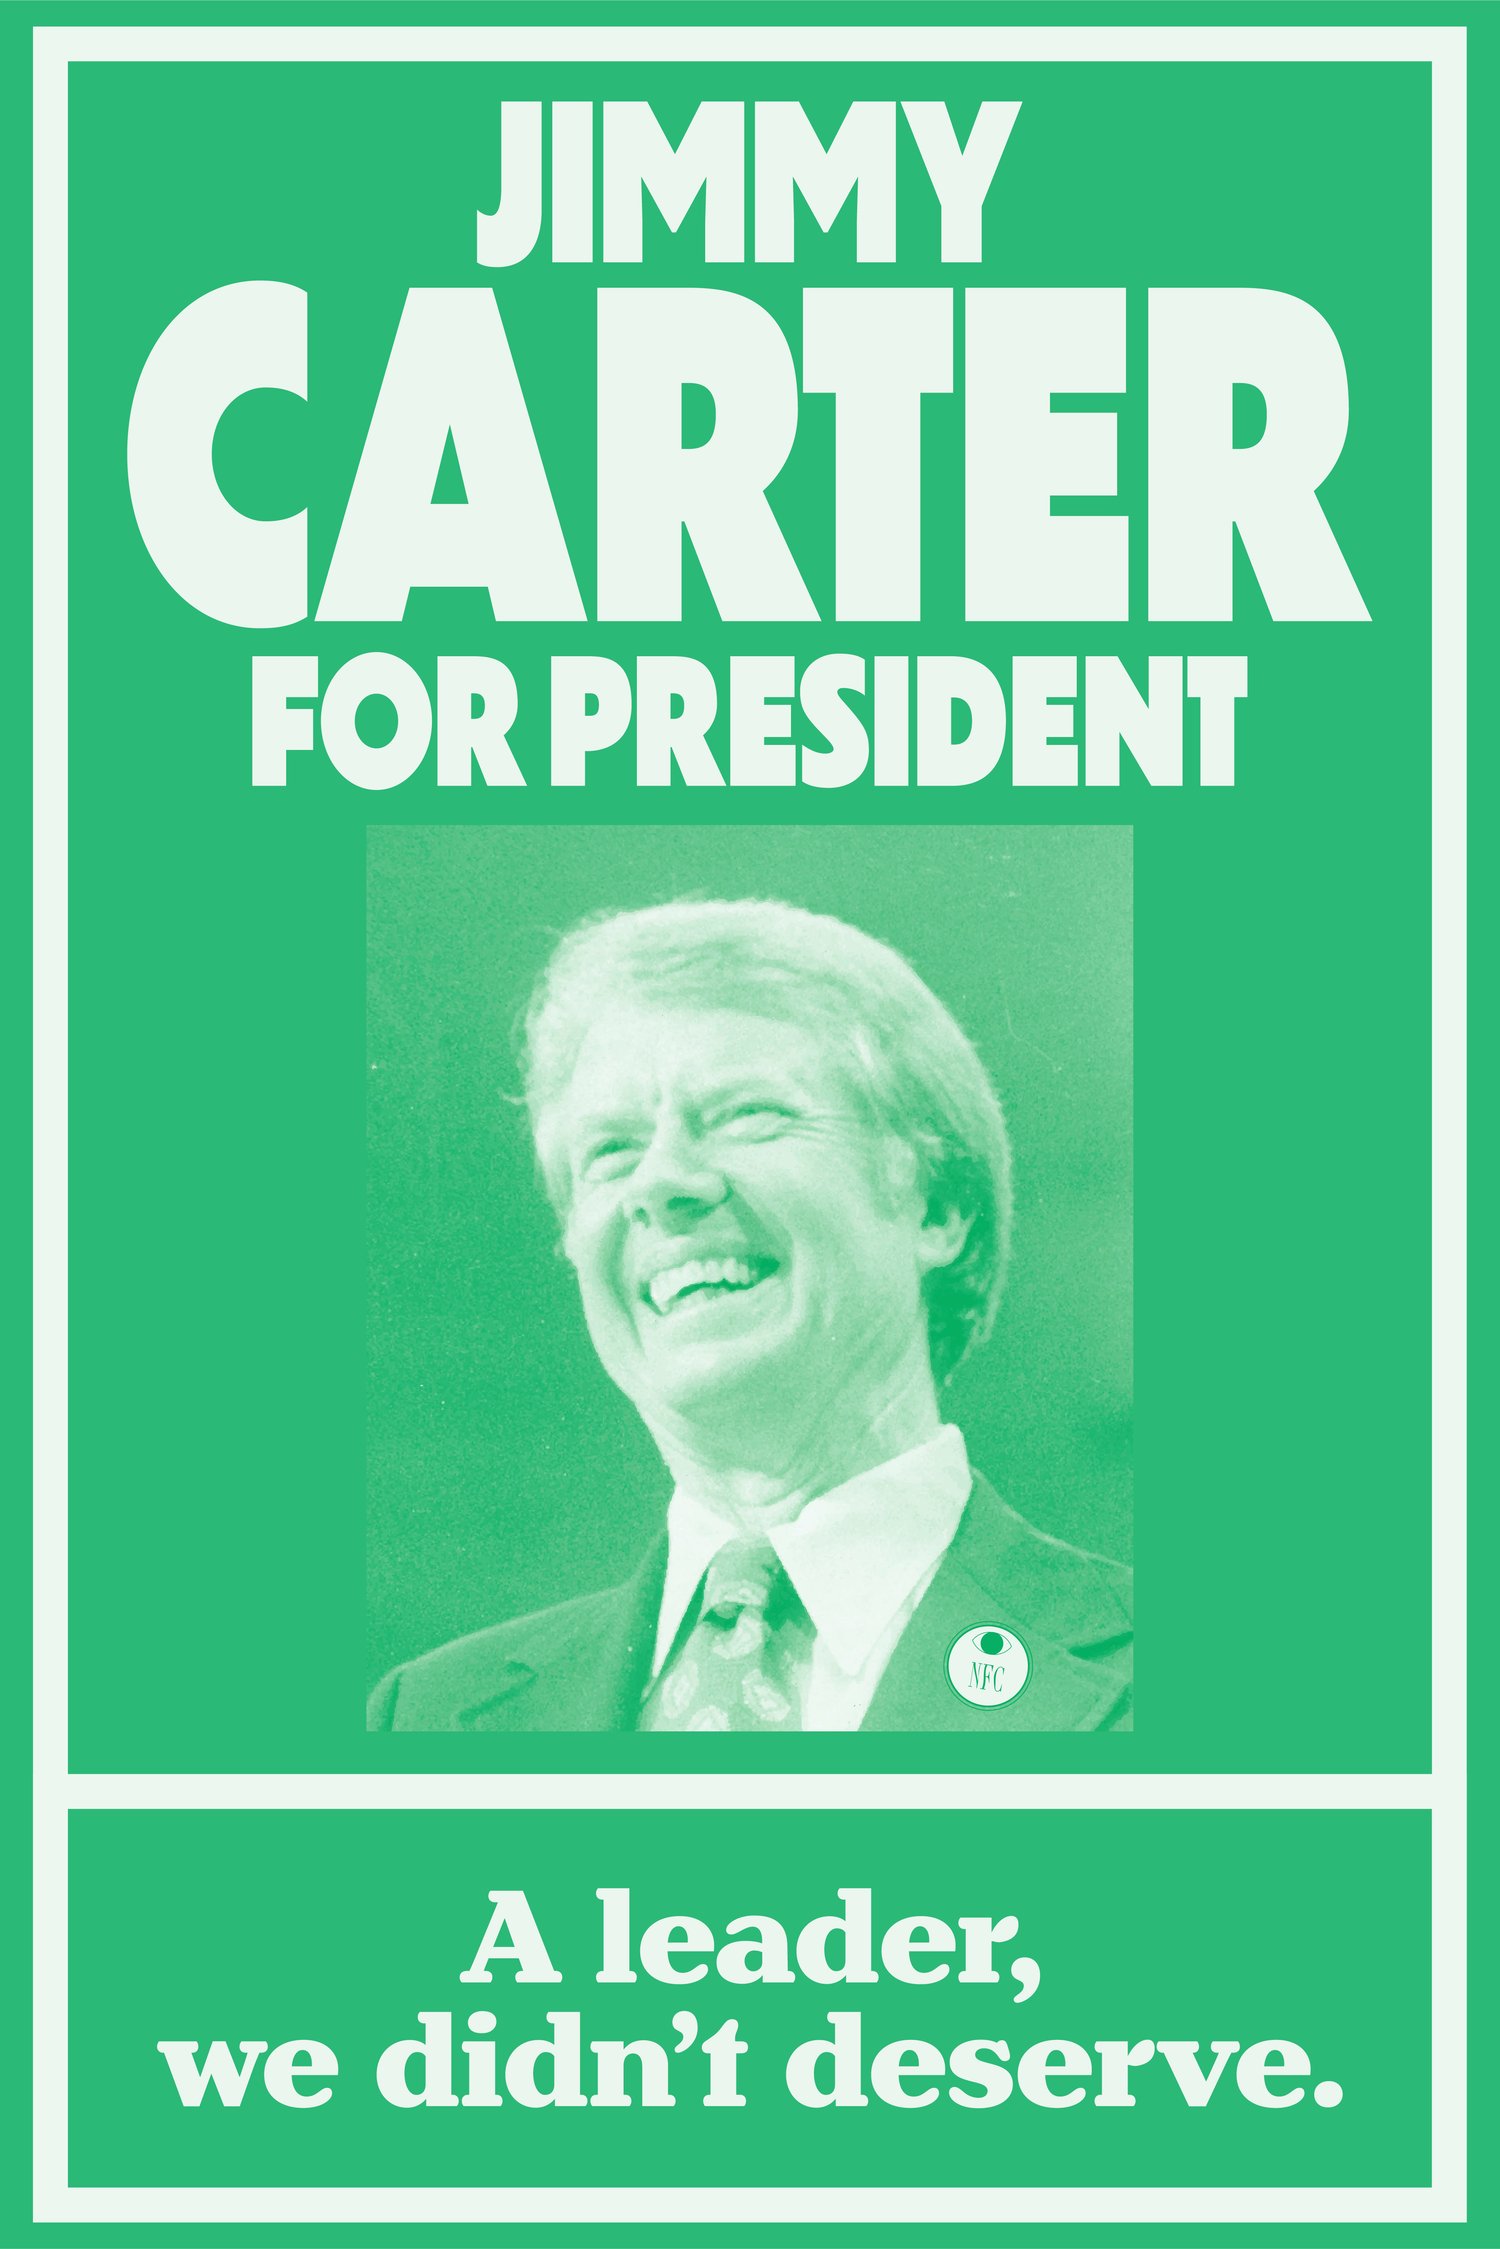 Jimmy Carter for President Poster